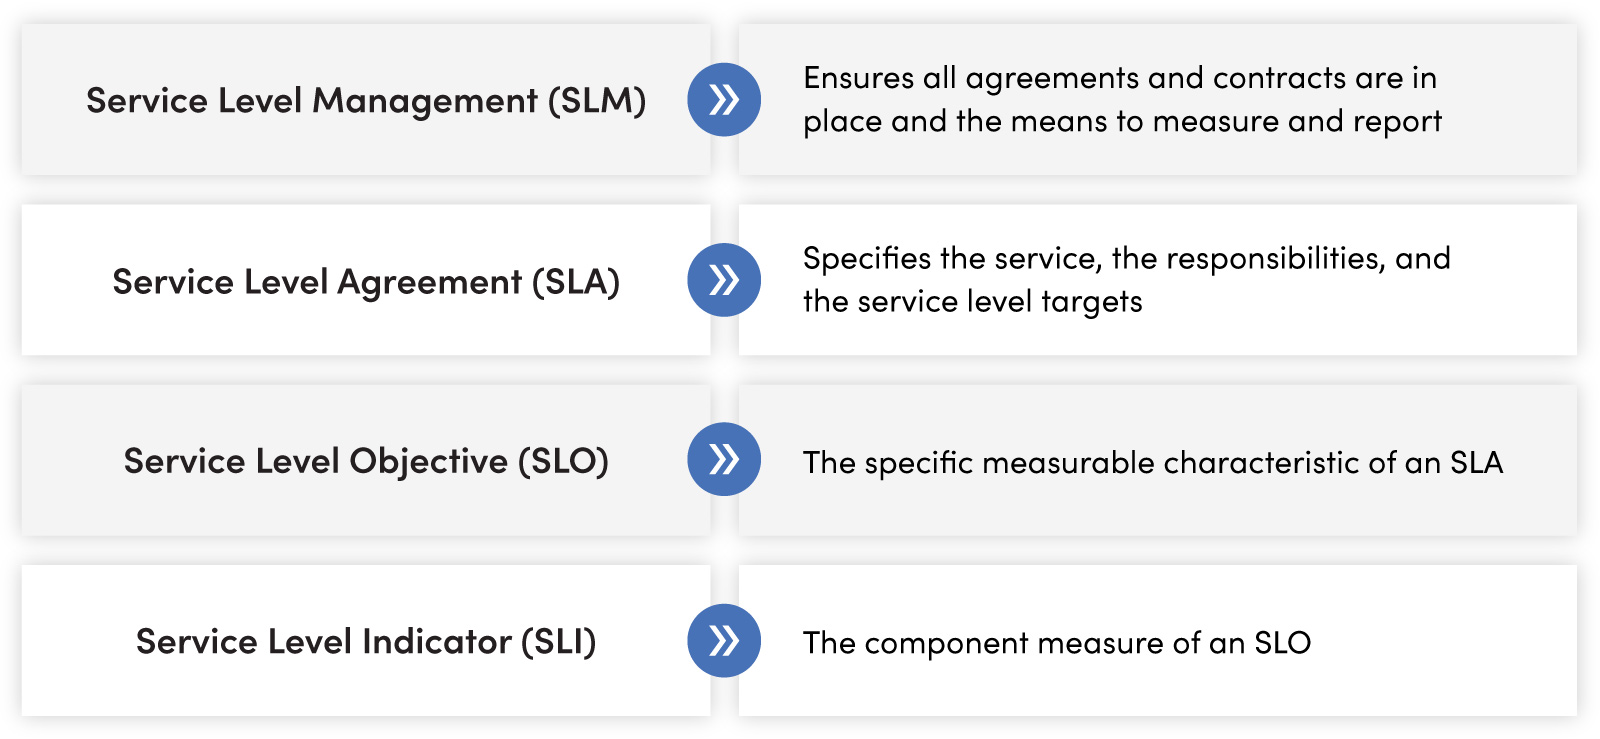 SLM vs. SLA vs. SLO vs. SLI